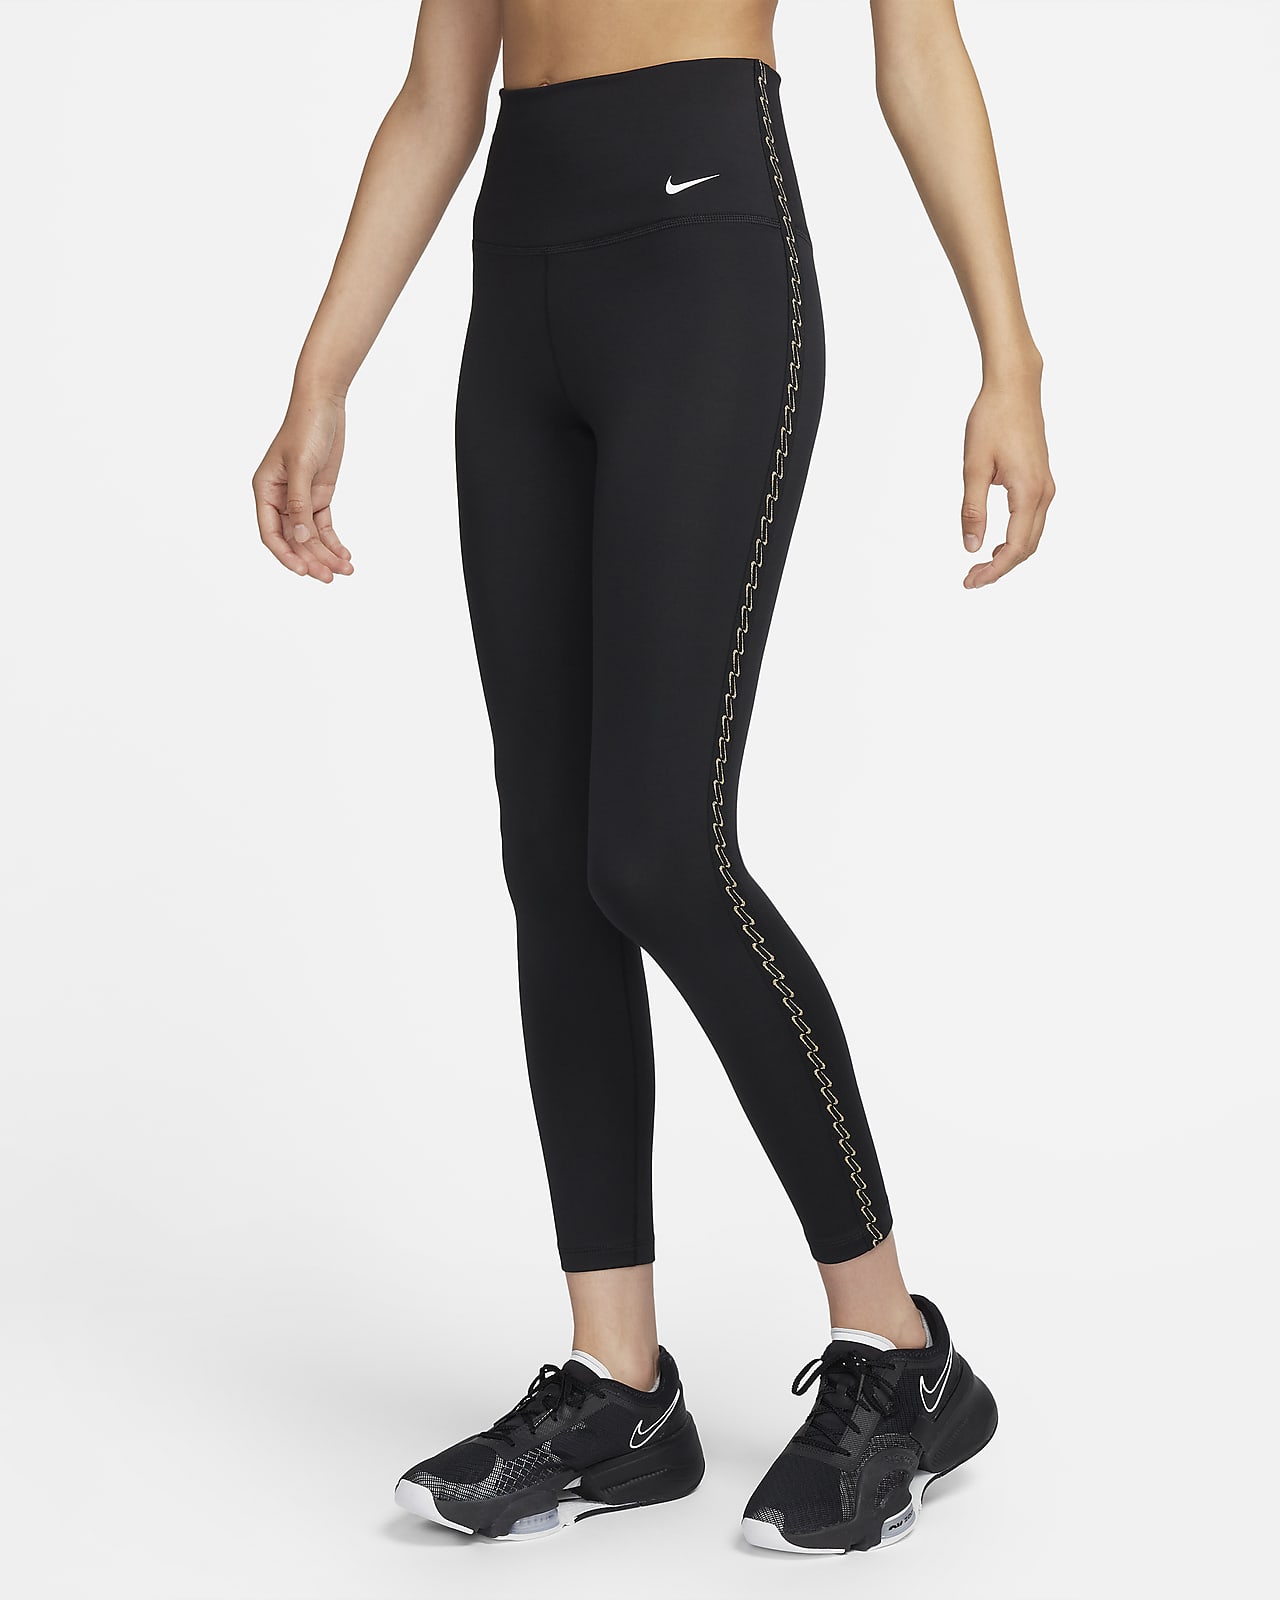 Legging para Entrenamiento Nike One de Mujer